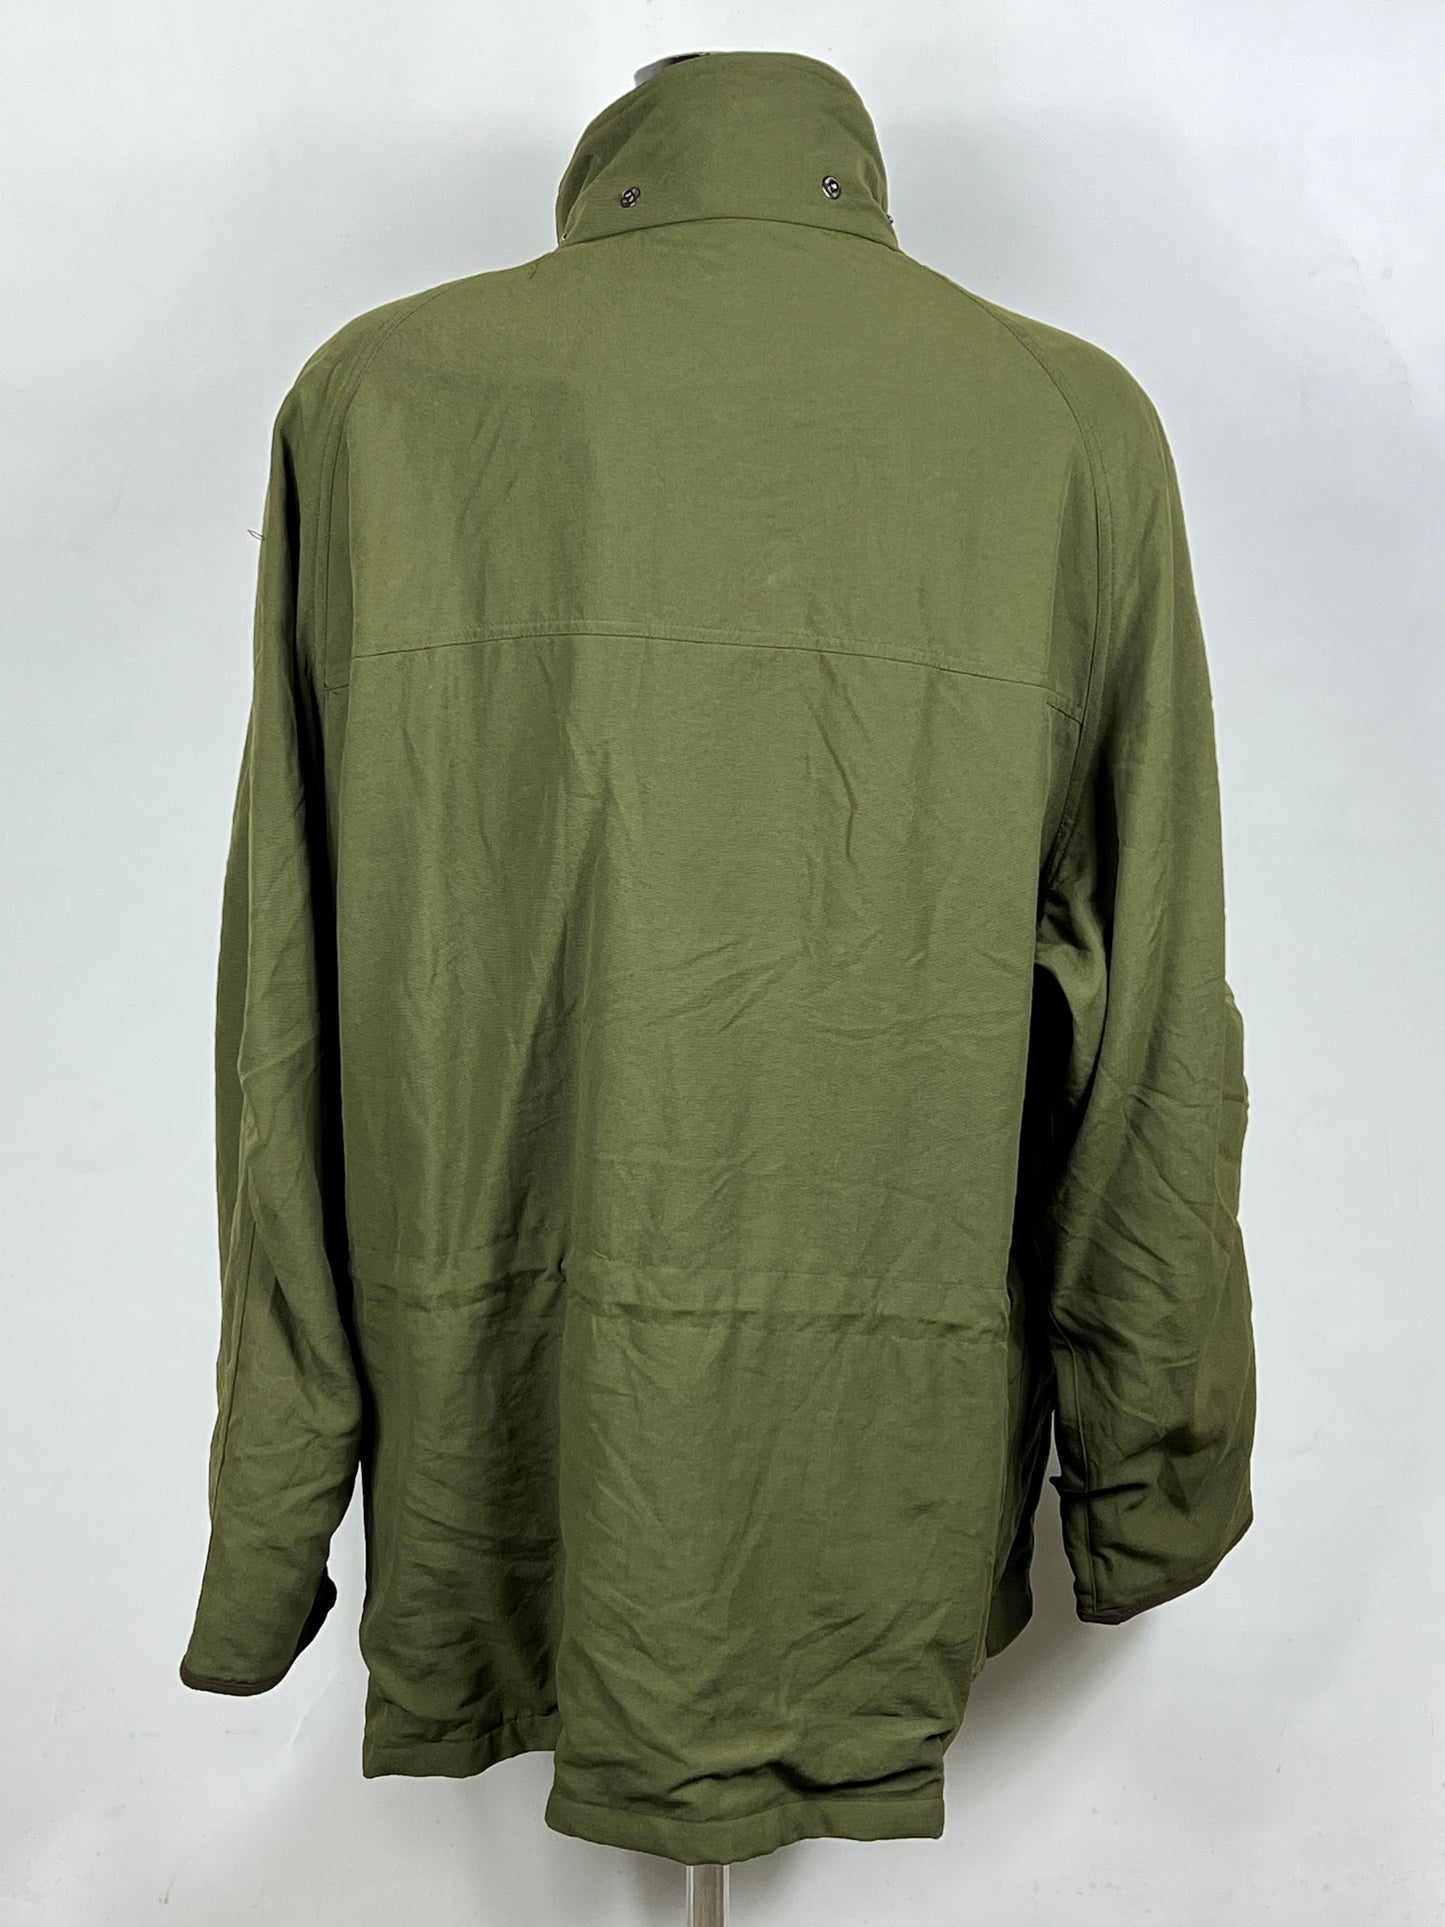 Barbour Giacca Uomo Impermeabile verde XXL Berwick Green Jacket size 2xl